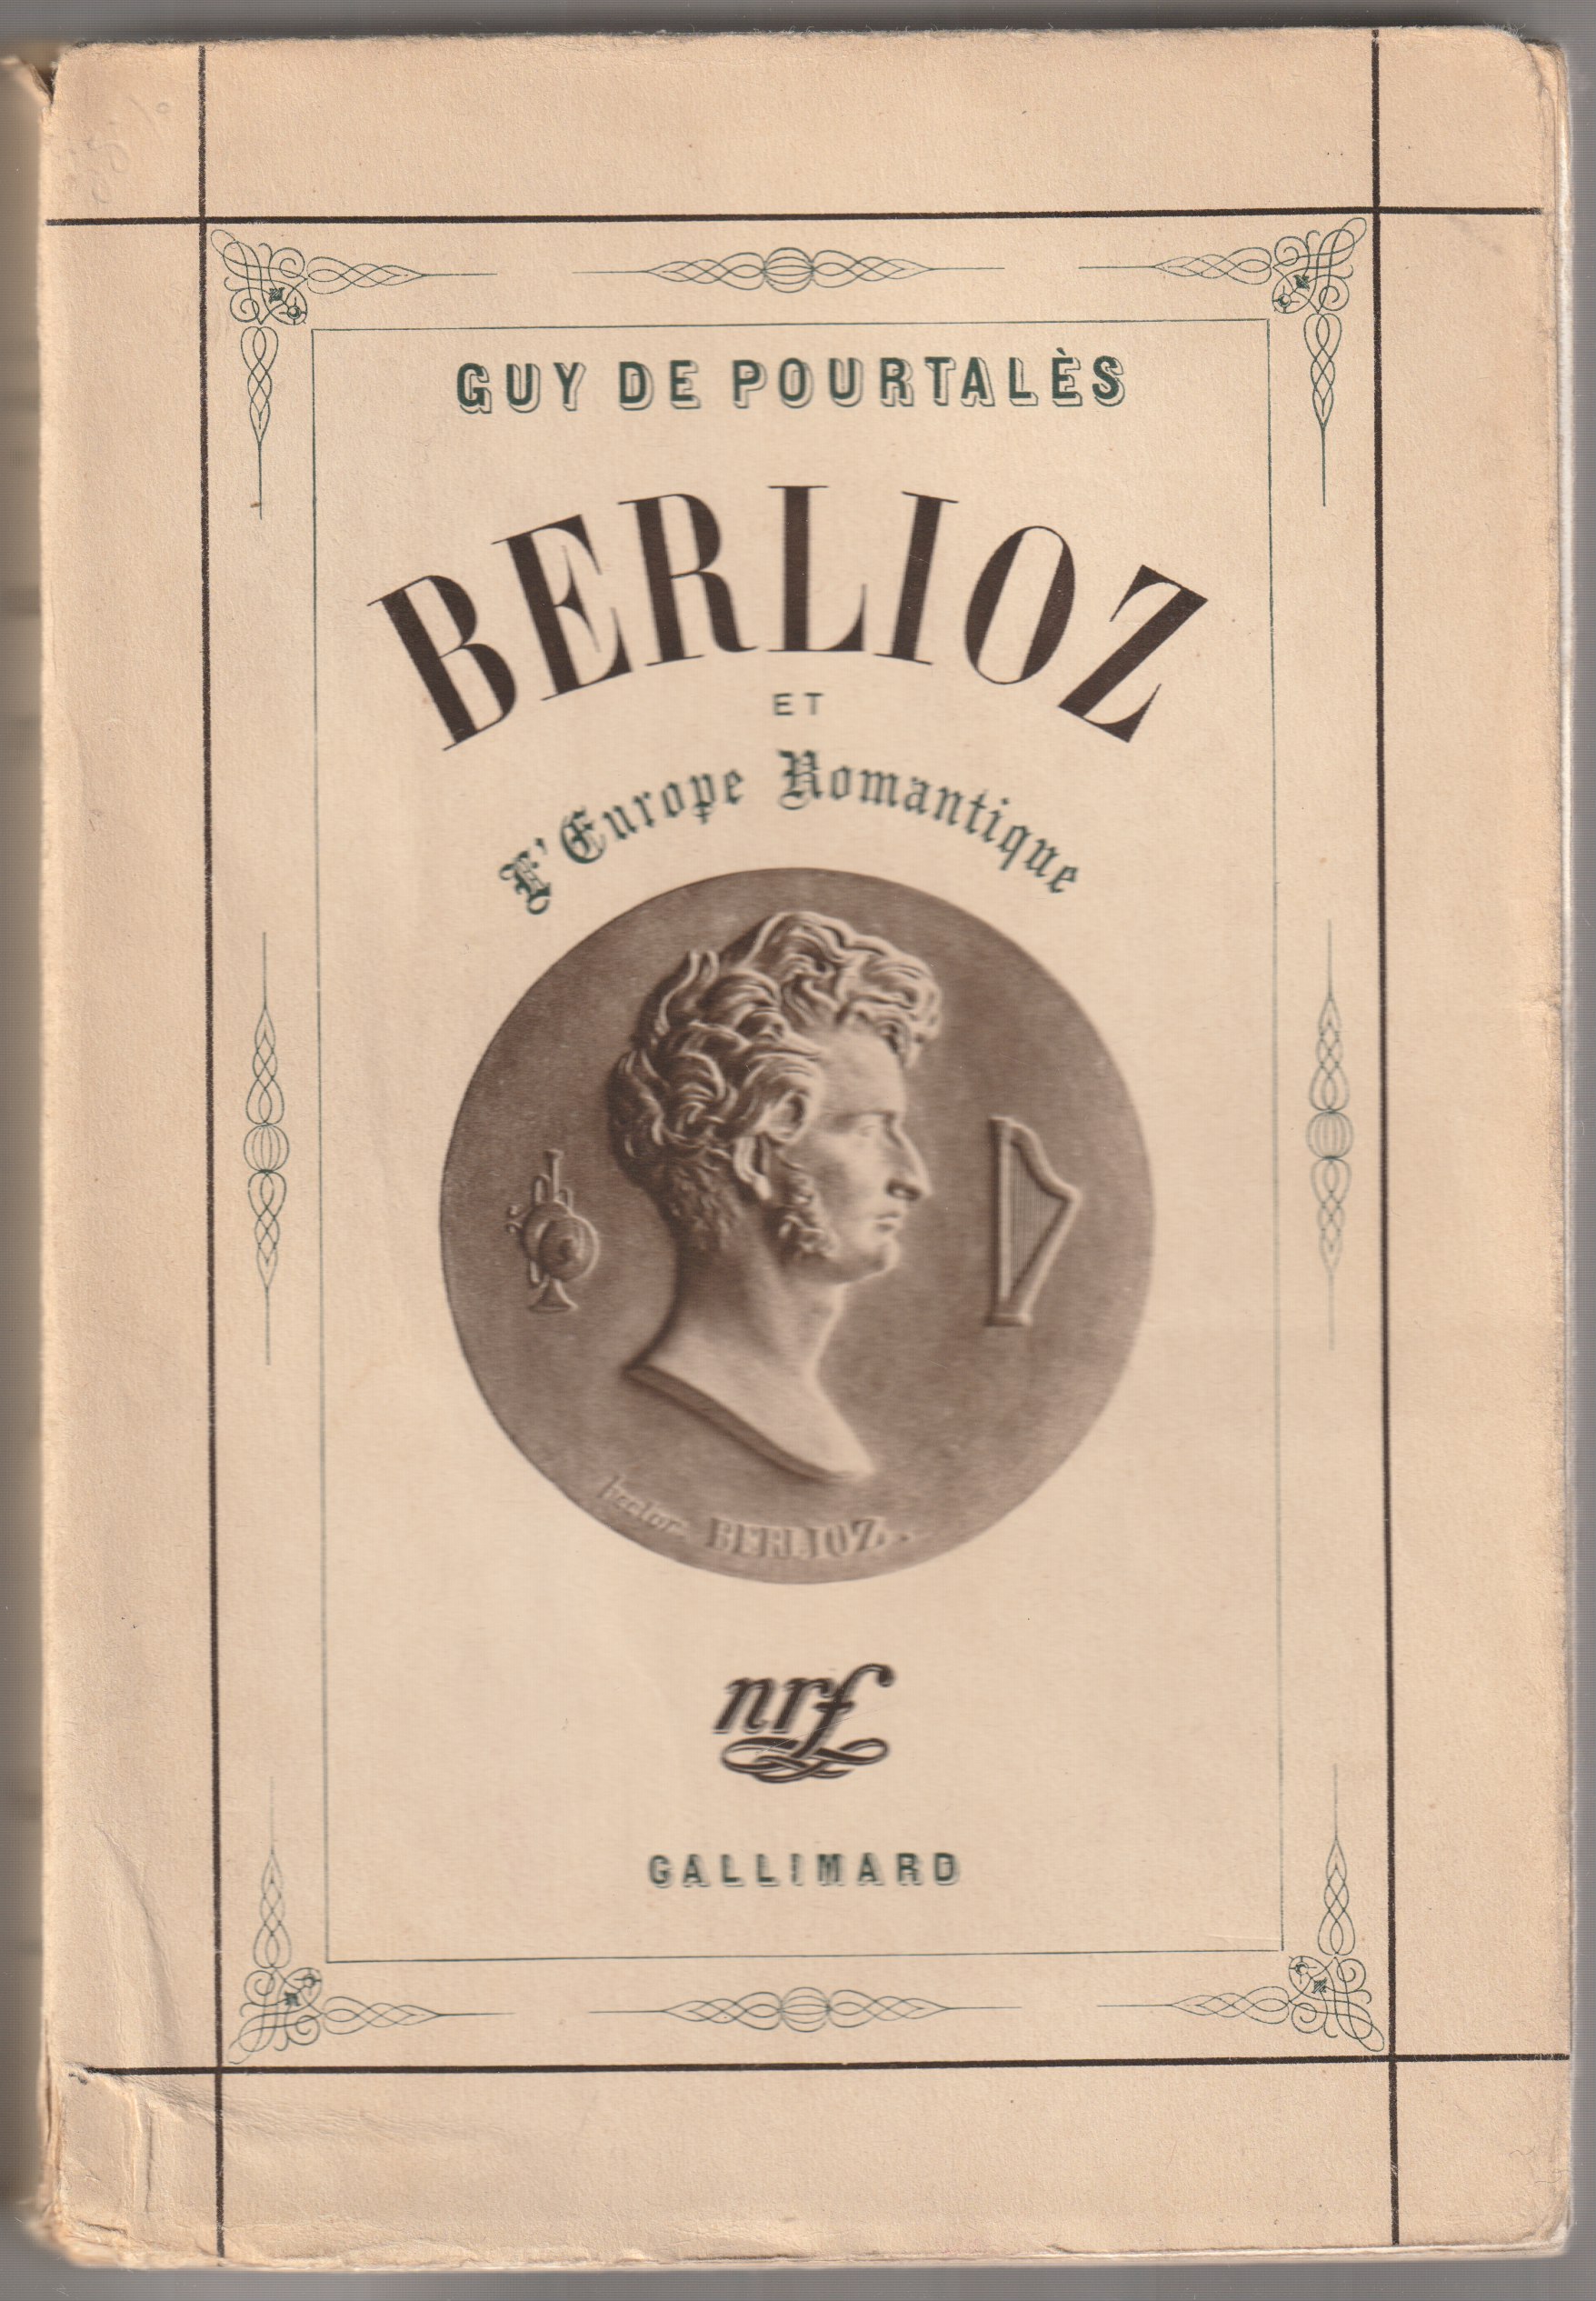 Berlioz et l'europe romantique.